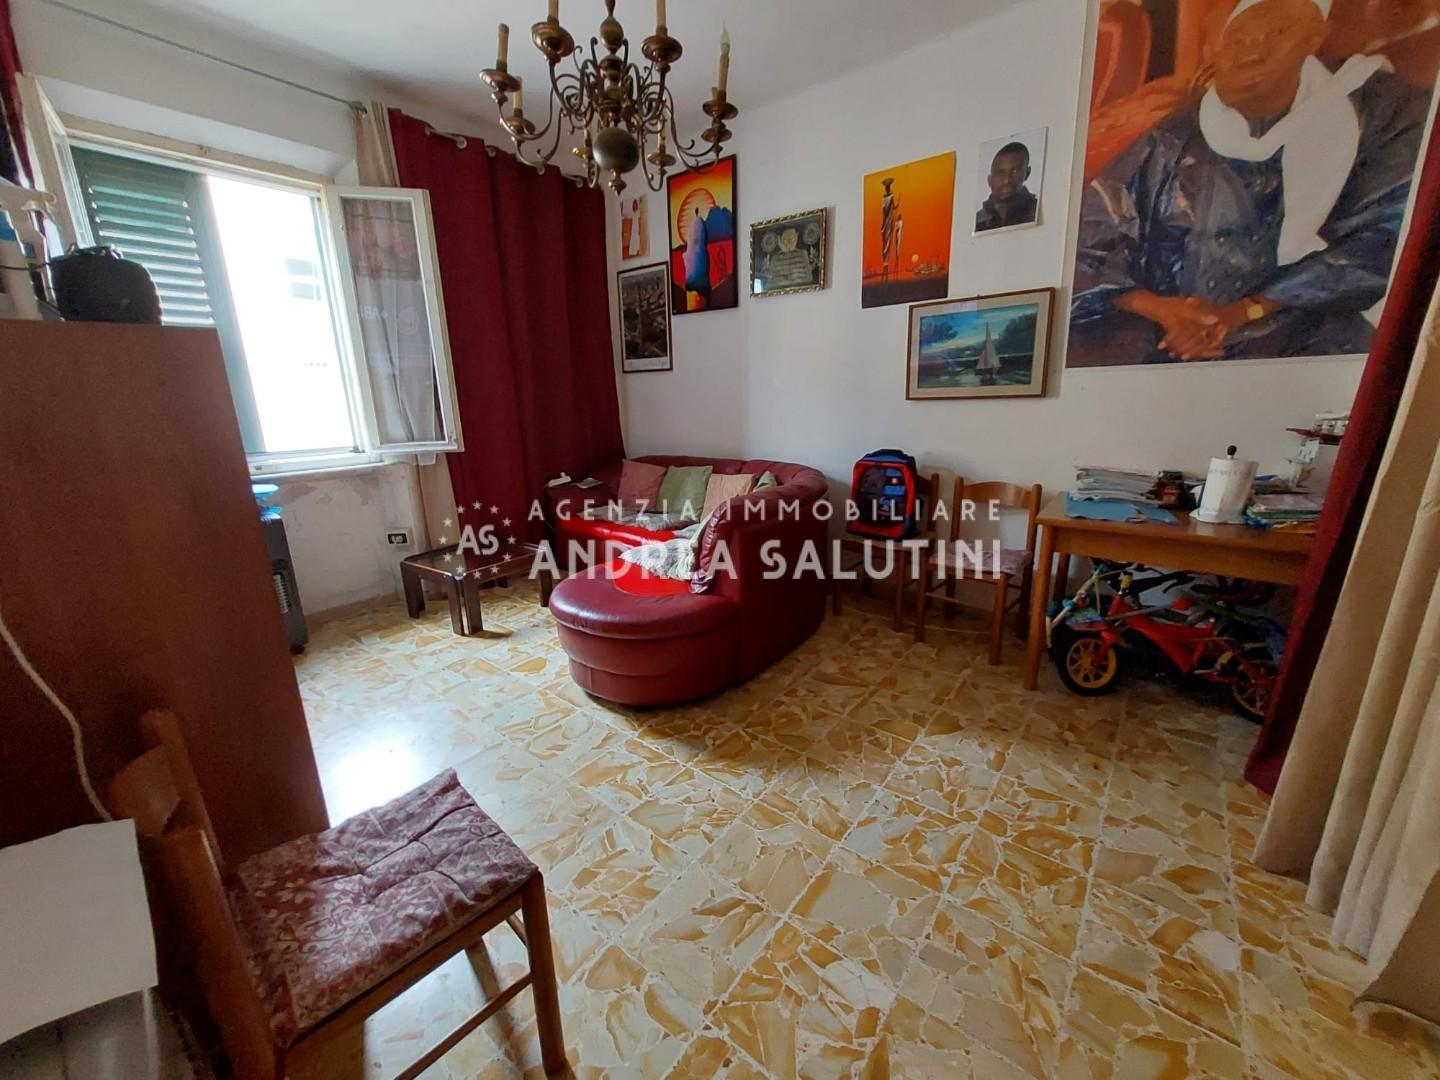 Appartamento in vendita a Pontedera, 4 locali, prezzo € 75.000 | PortaleAgenzieImmobiliari.it